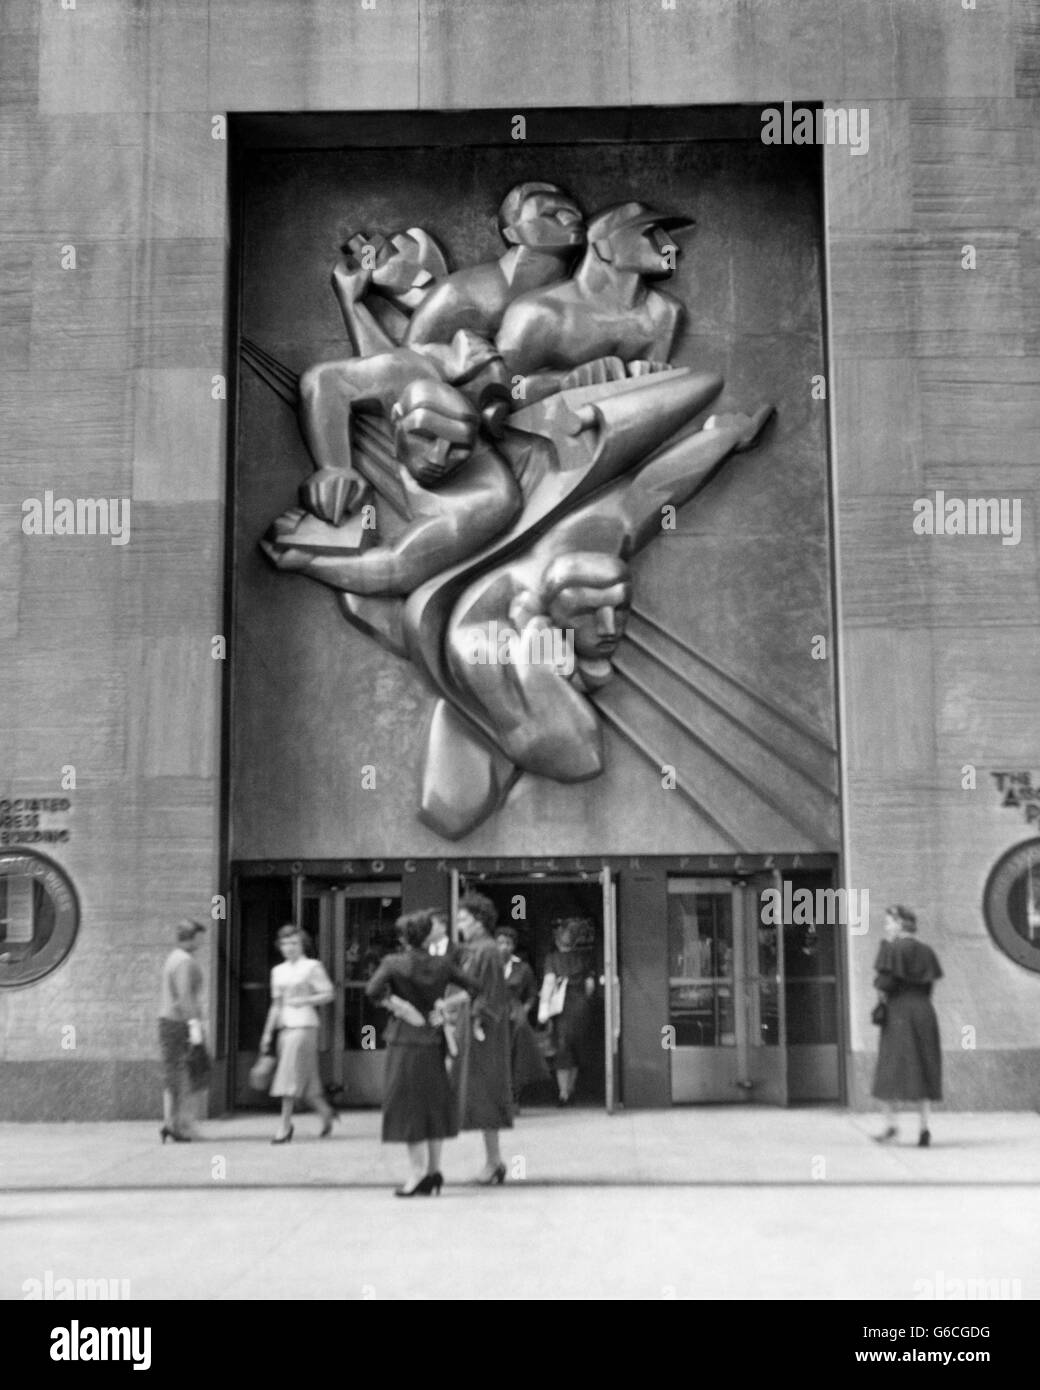 Années 1940 Années 1950 Art déco du Rockefeller Center, bas-relief NEWS PAR ISAMU NOGUCHI SUR ASSOCIATED PRESS BUILDING NEW YORK USA Banque D'Images